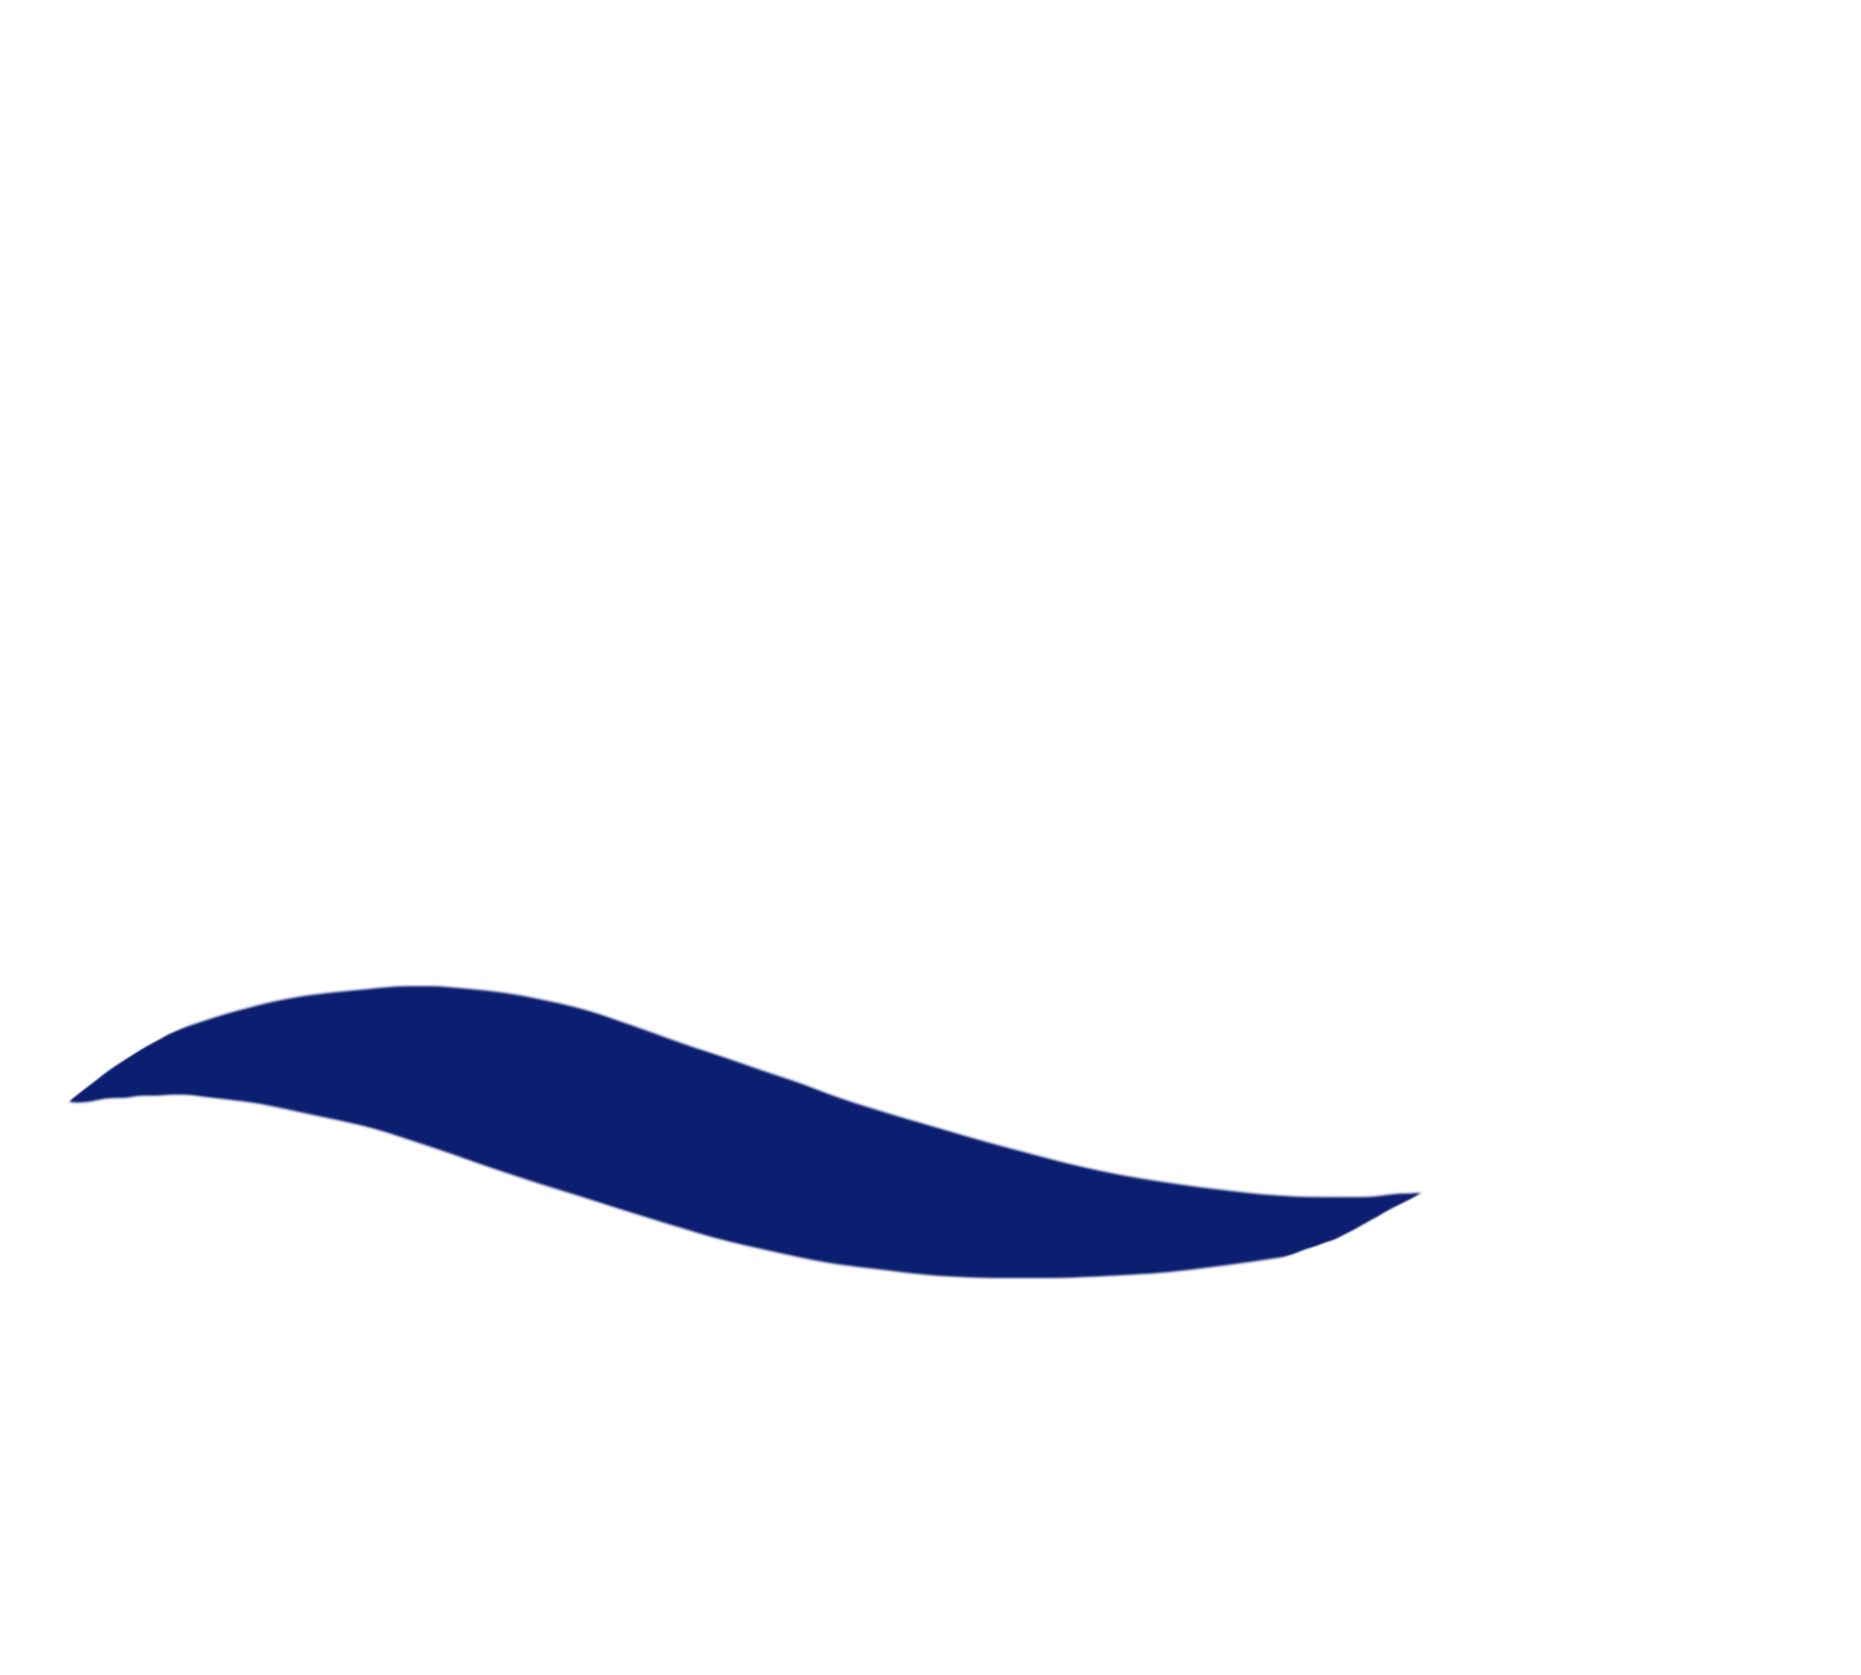 Smartmarine